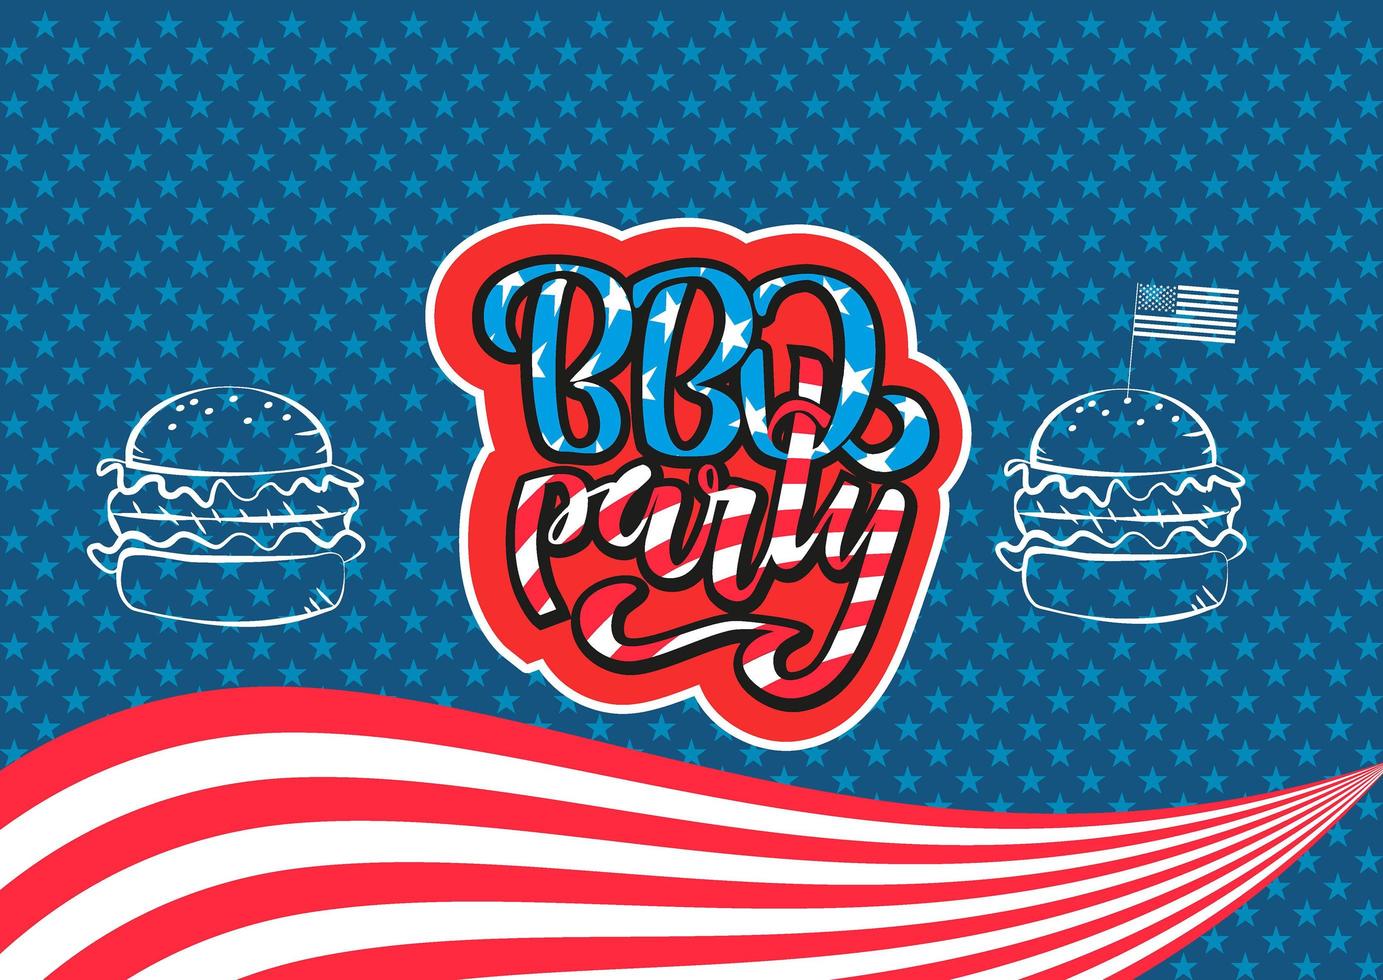 4 juli BBQ-feestje belettering uitnodiging voor Amerikaanse onafhankelijkheidsdag barbecue met 4 juli decoraties sterren, vlaggen, hamburgers op blauwe achtergrond. vector hand getekende illustratie.